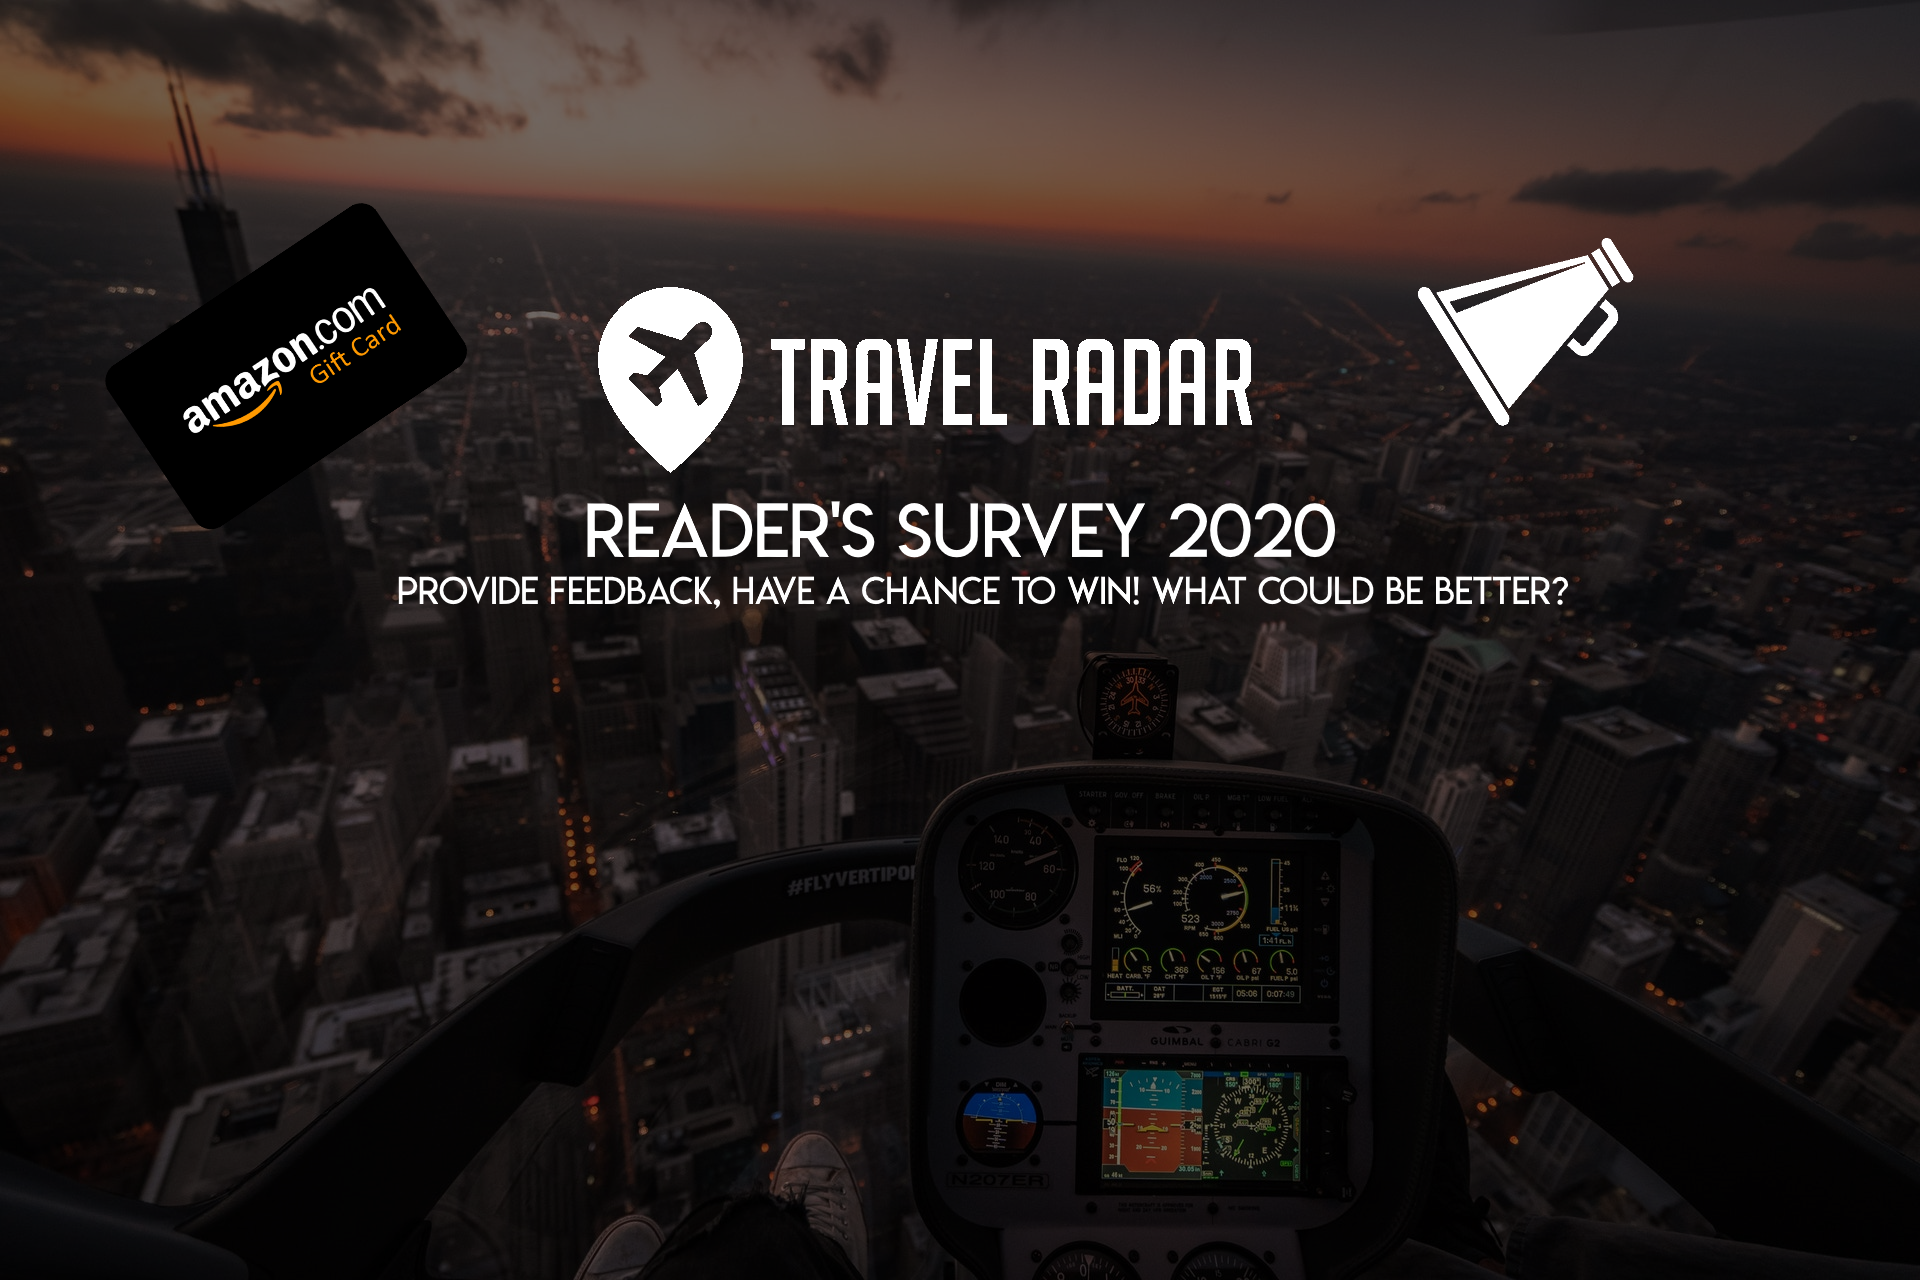 ReadersSurvey2020 - Travel Radar - Aviation News